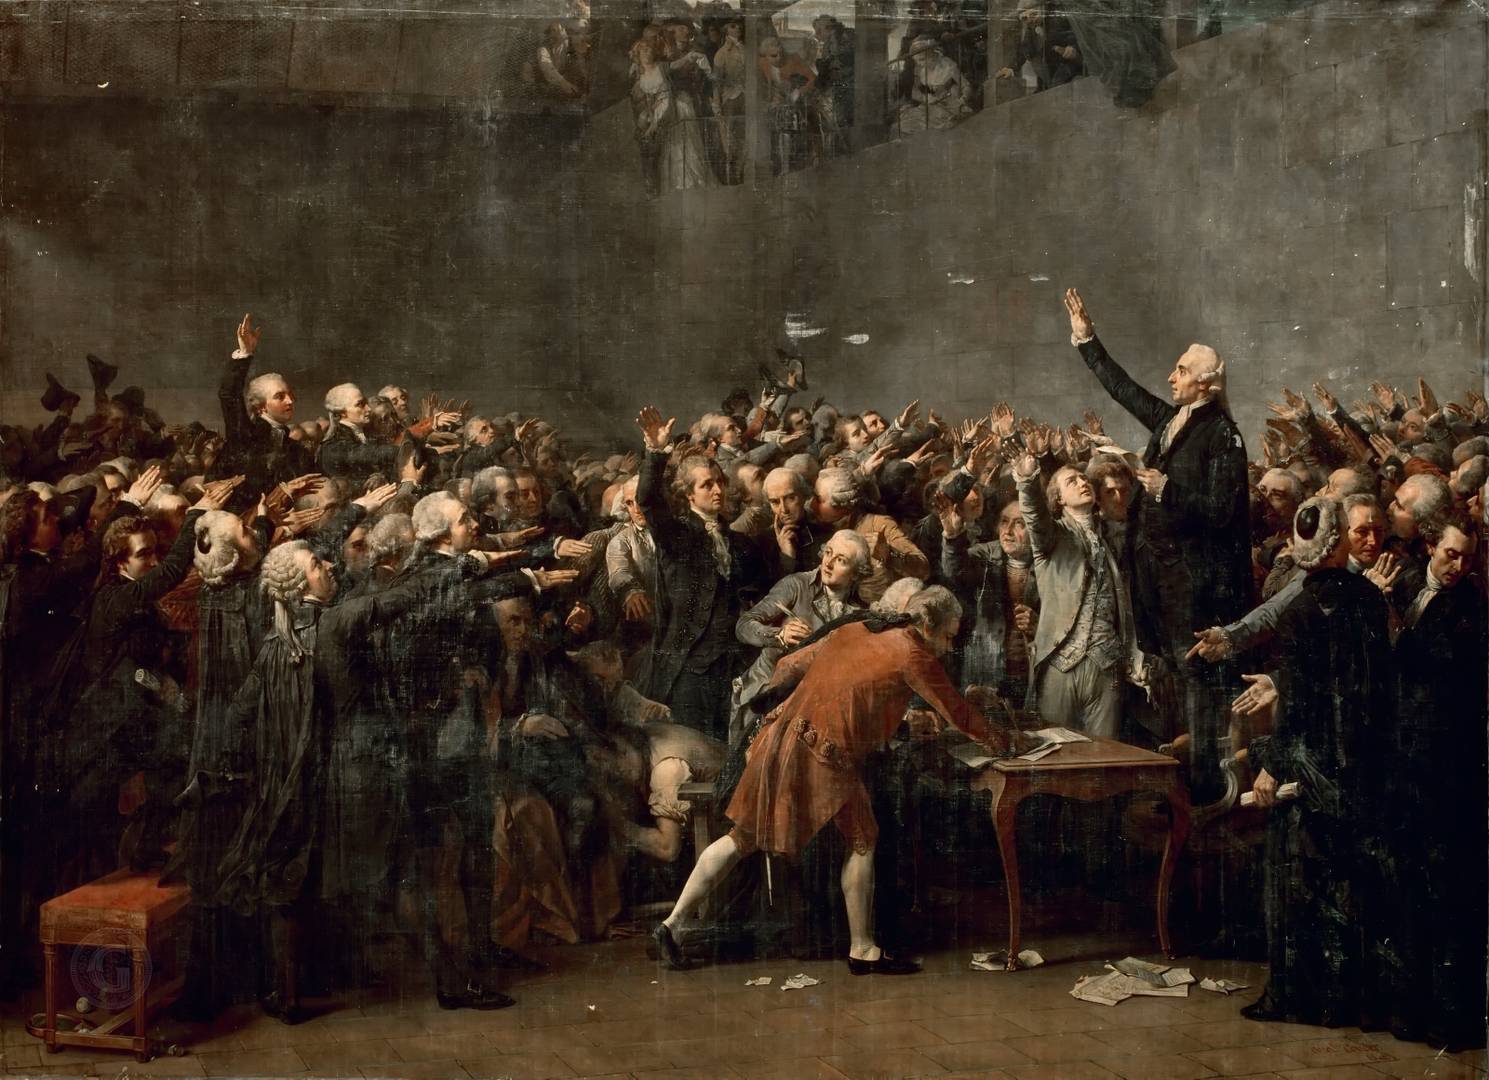 Огюст Кудер. Клятва в зале для игры в мяч 20 июня 1789. 1848